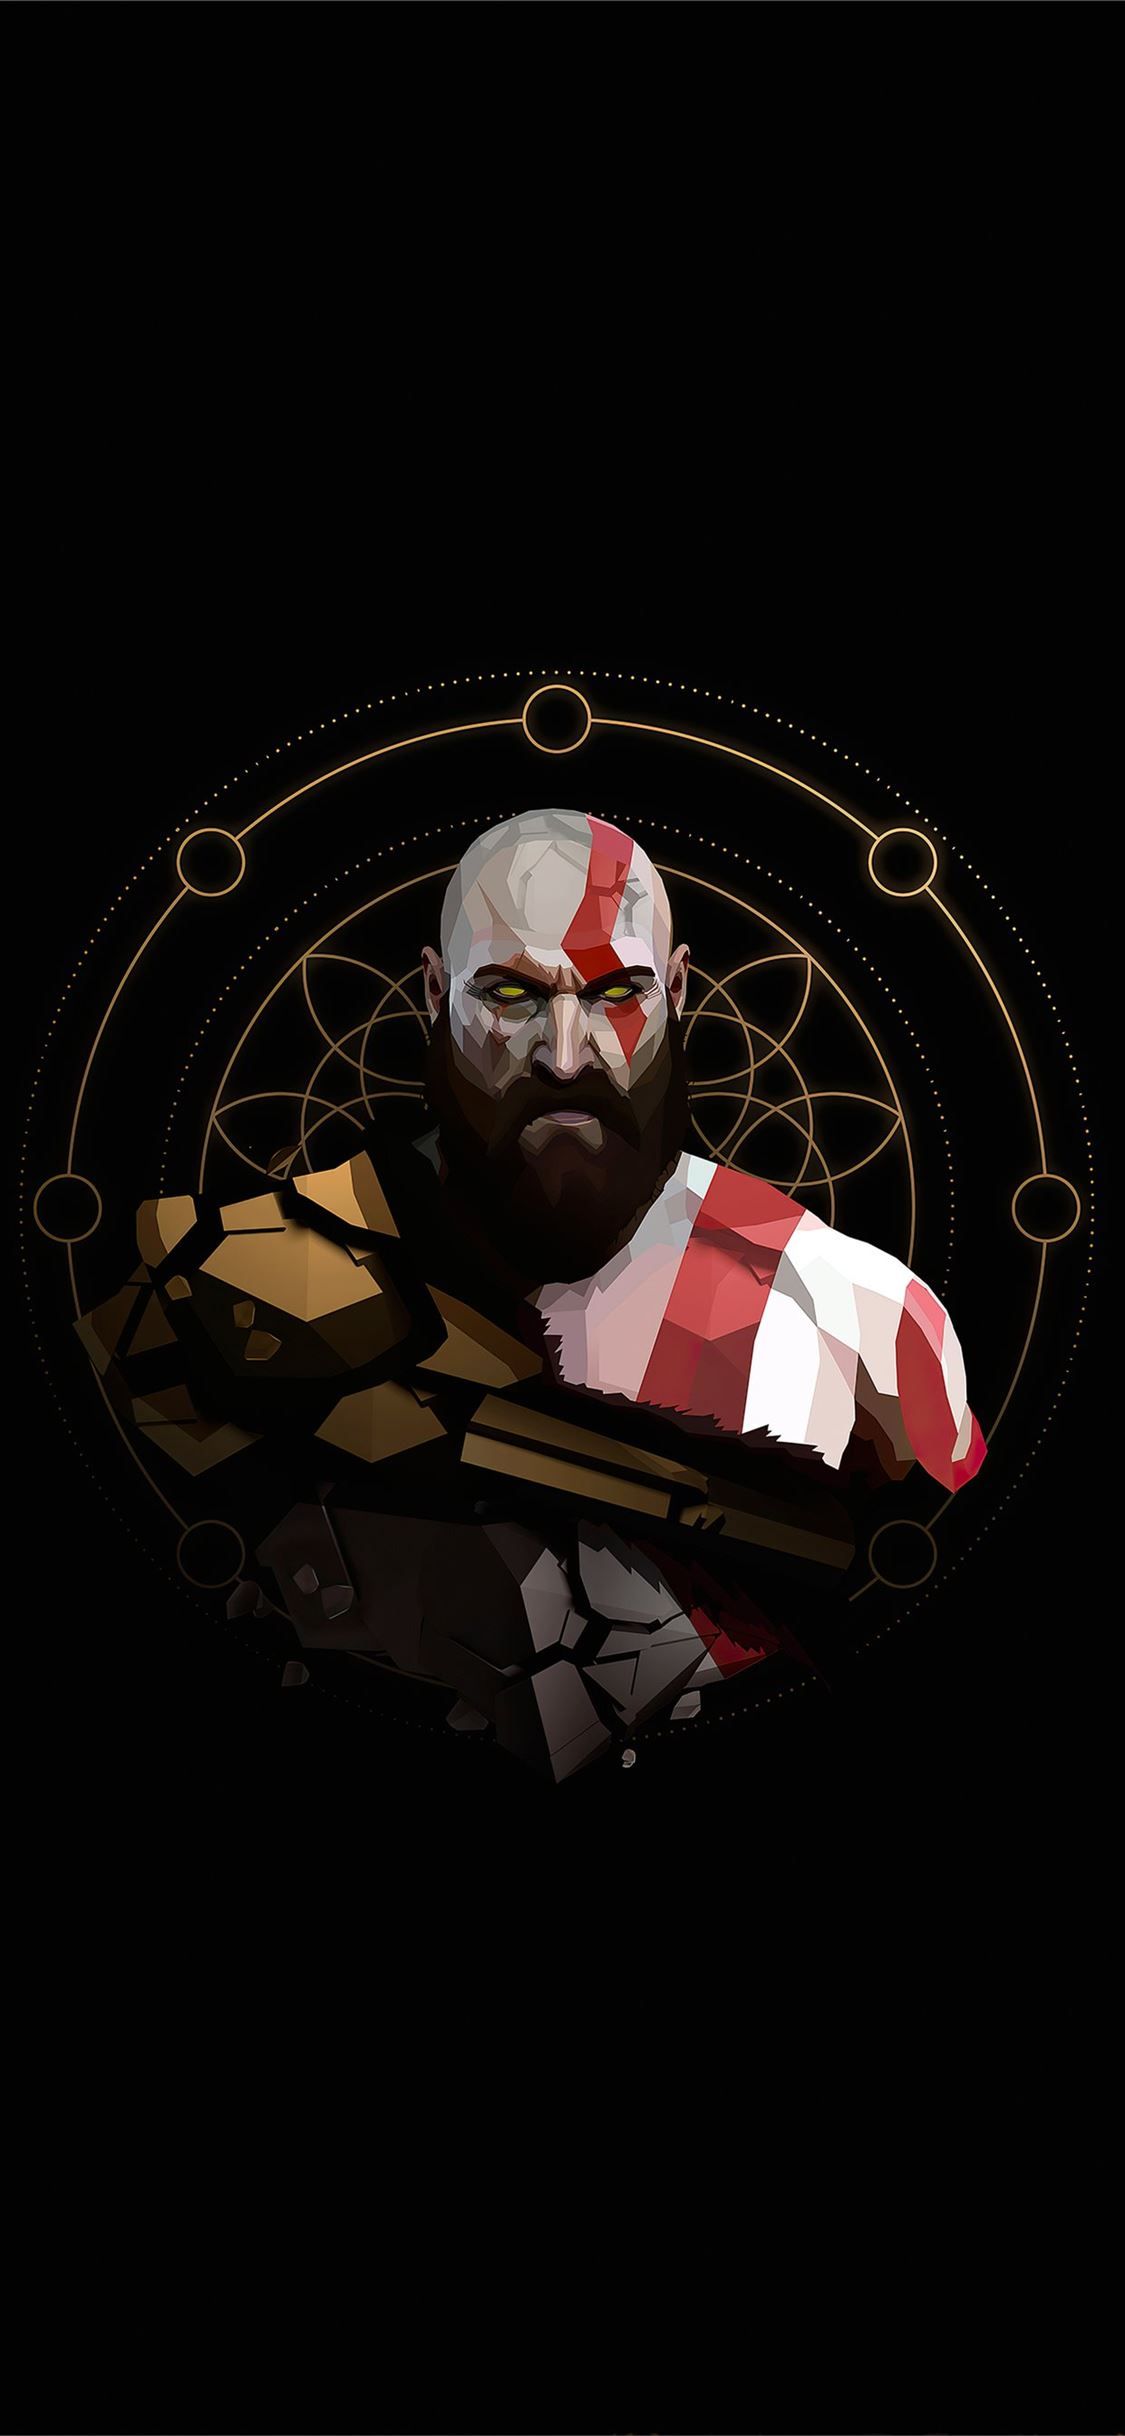 kratos minimal artwork 4k iPhone X Wallpaper Free Download